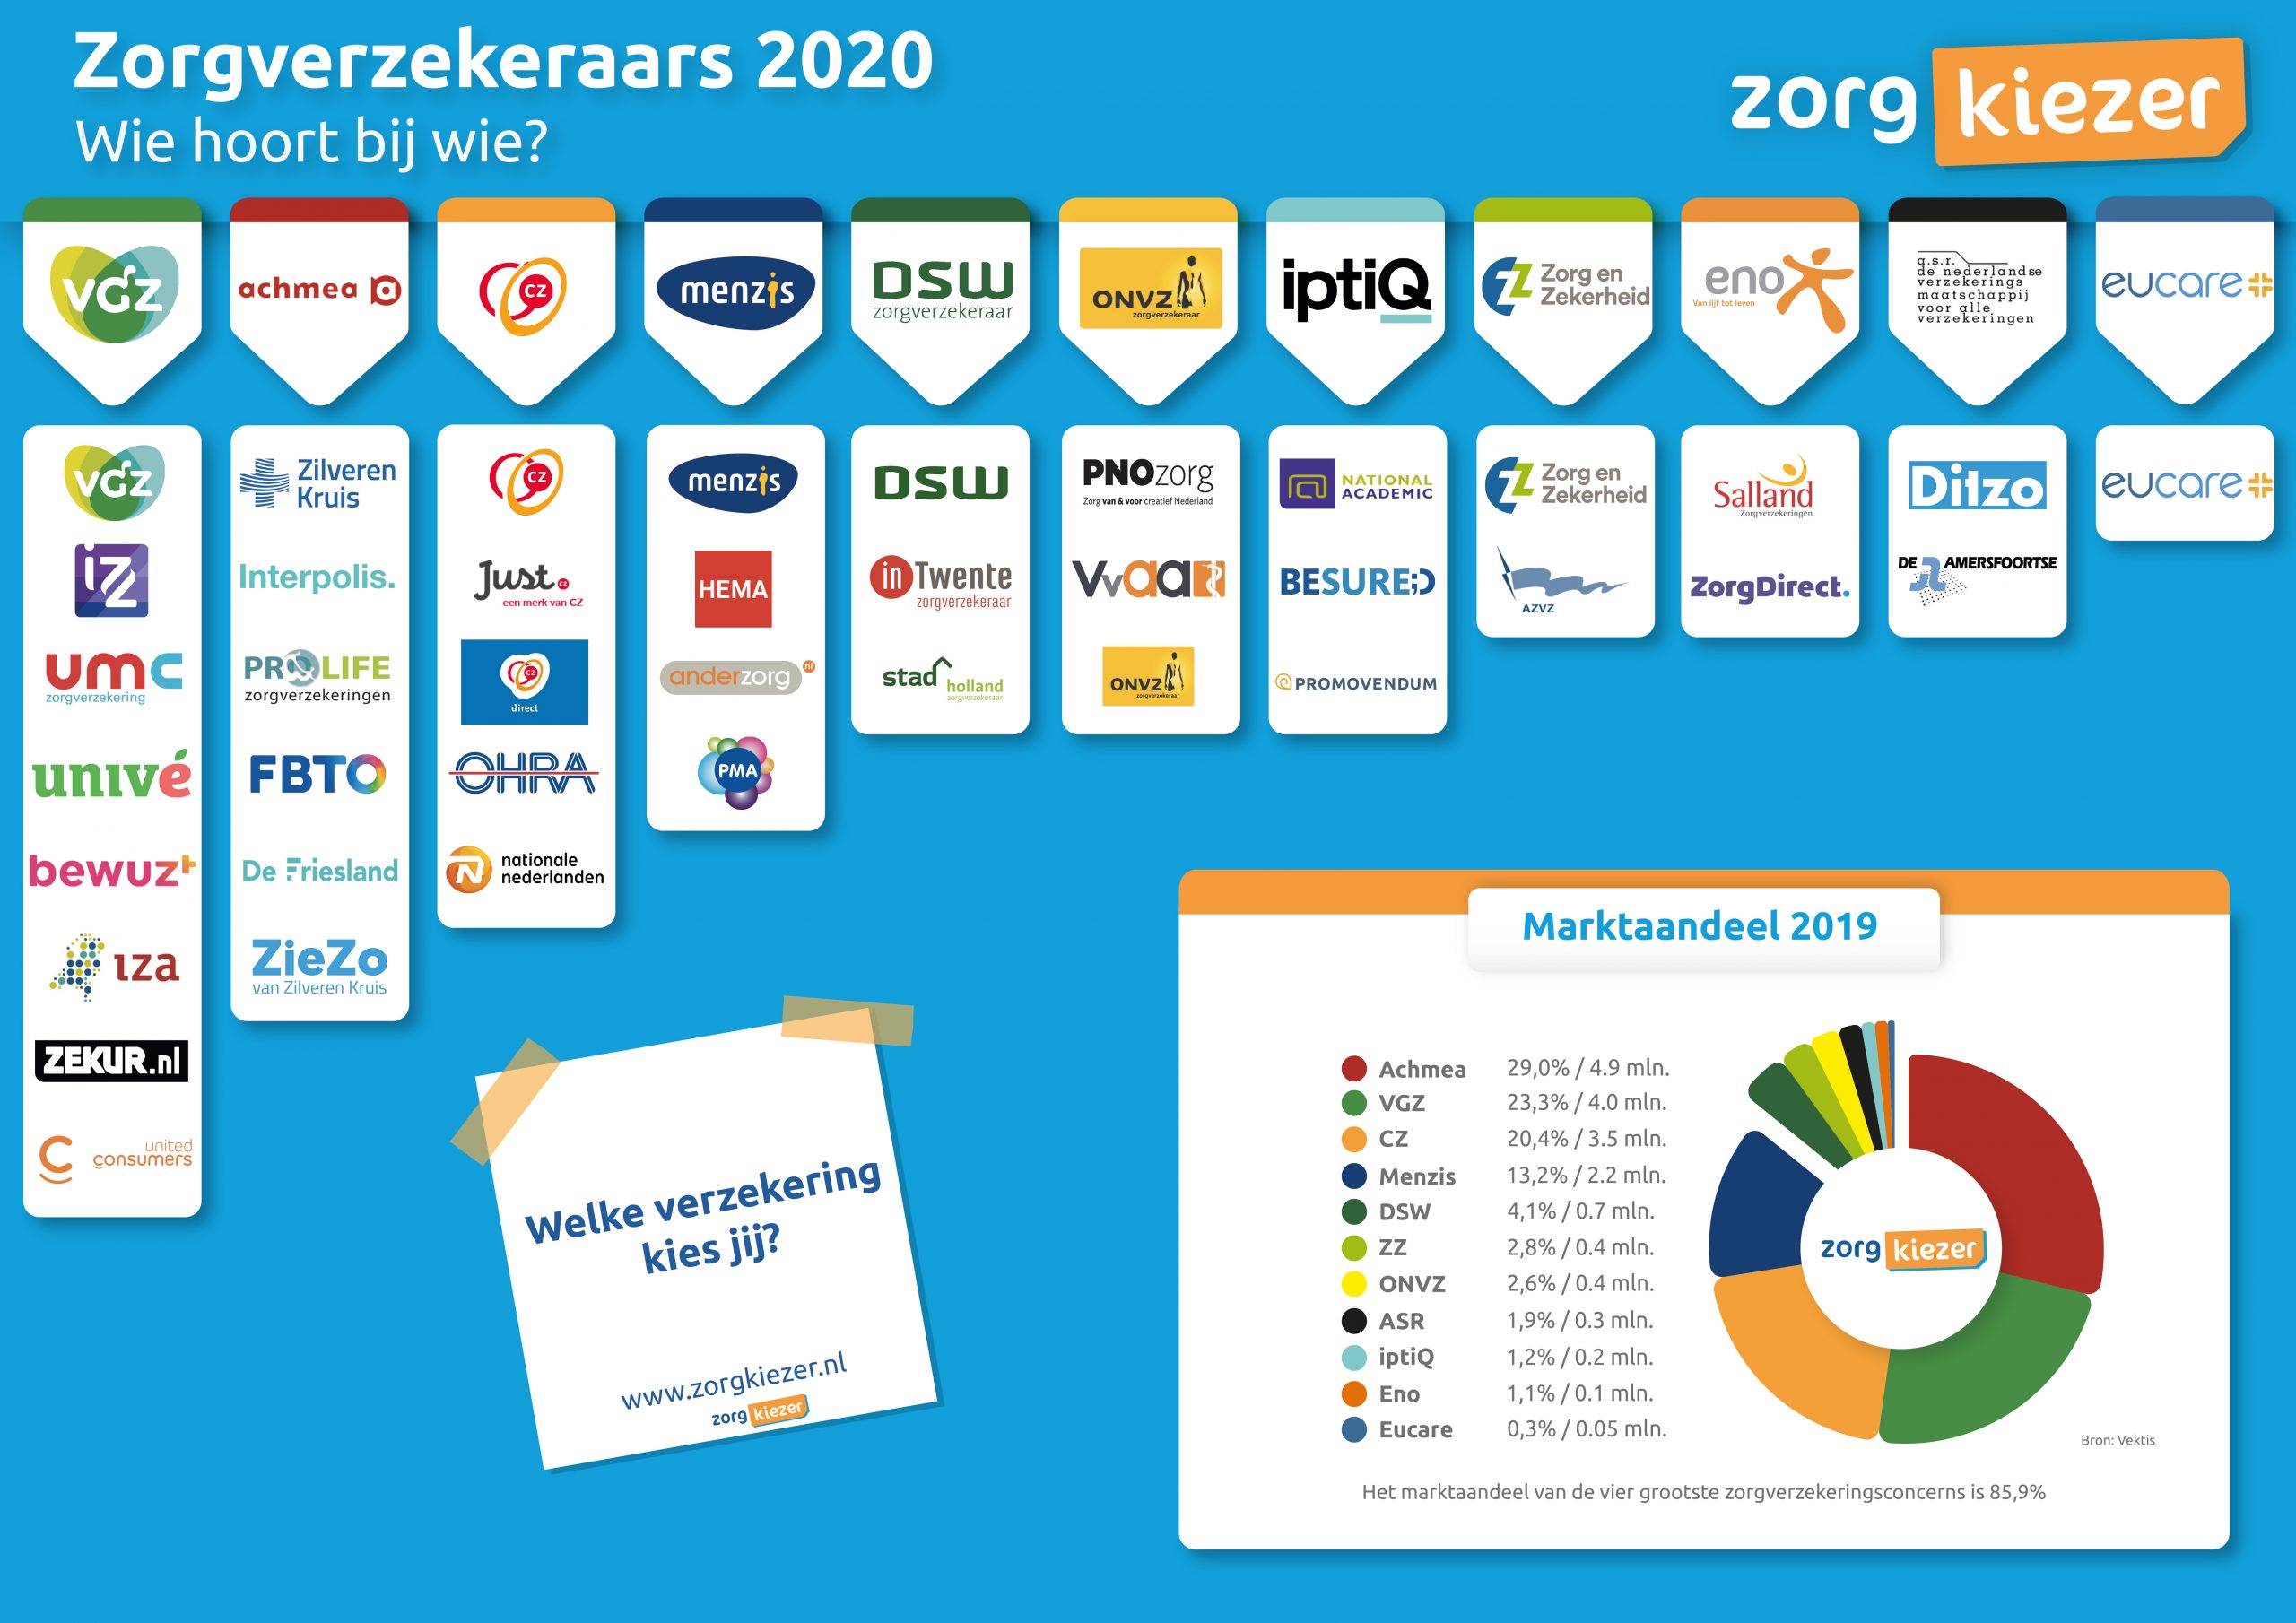 6,5% van de Nederlanders kiest nieuwe zorgverzekering in 2020 • ZorgKiezer Blog